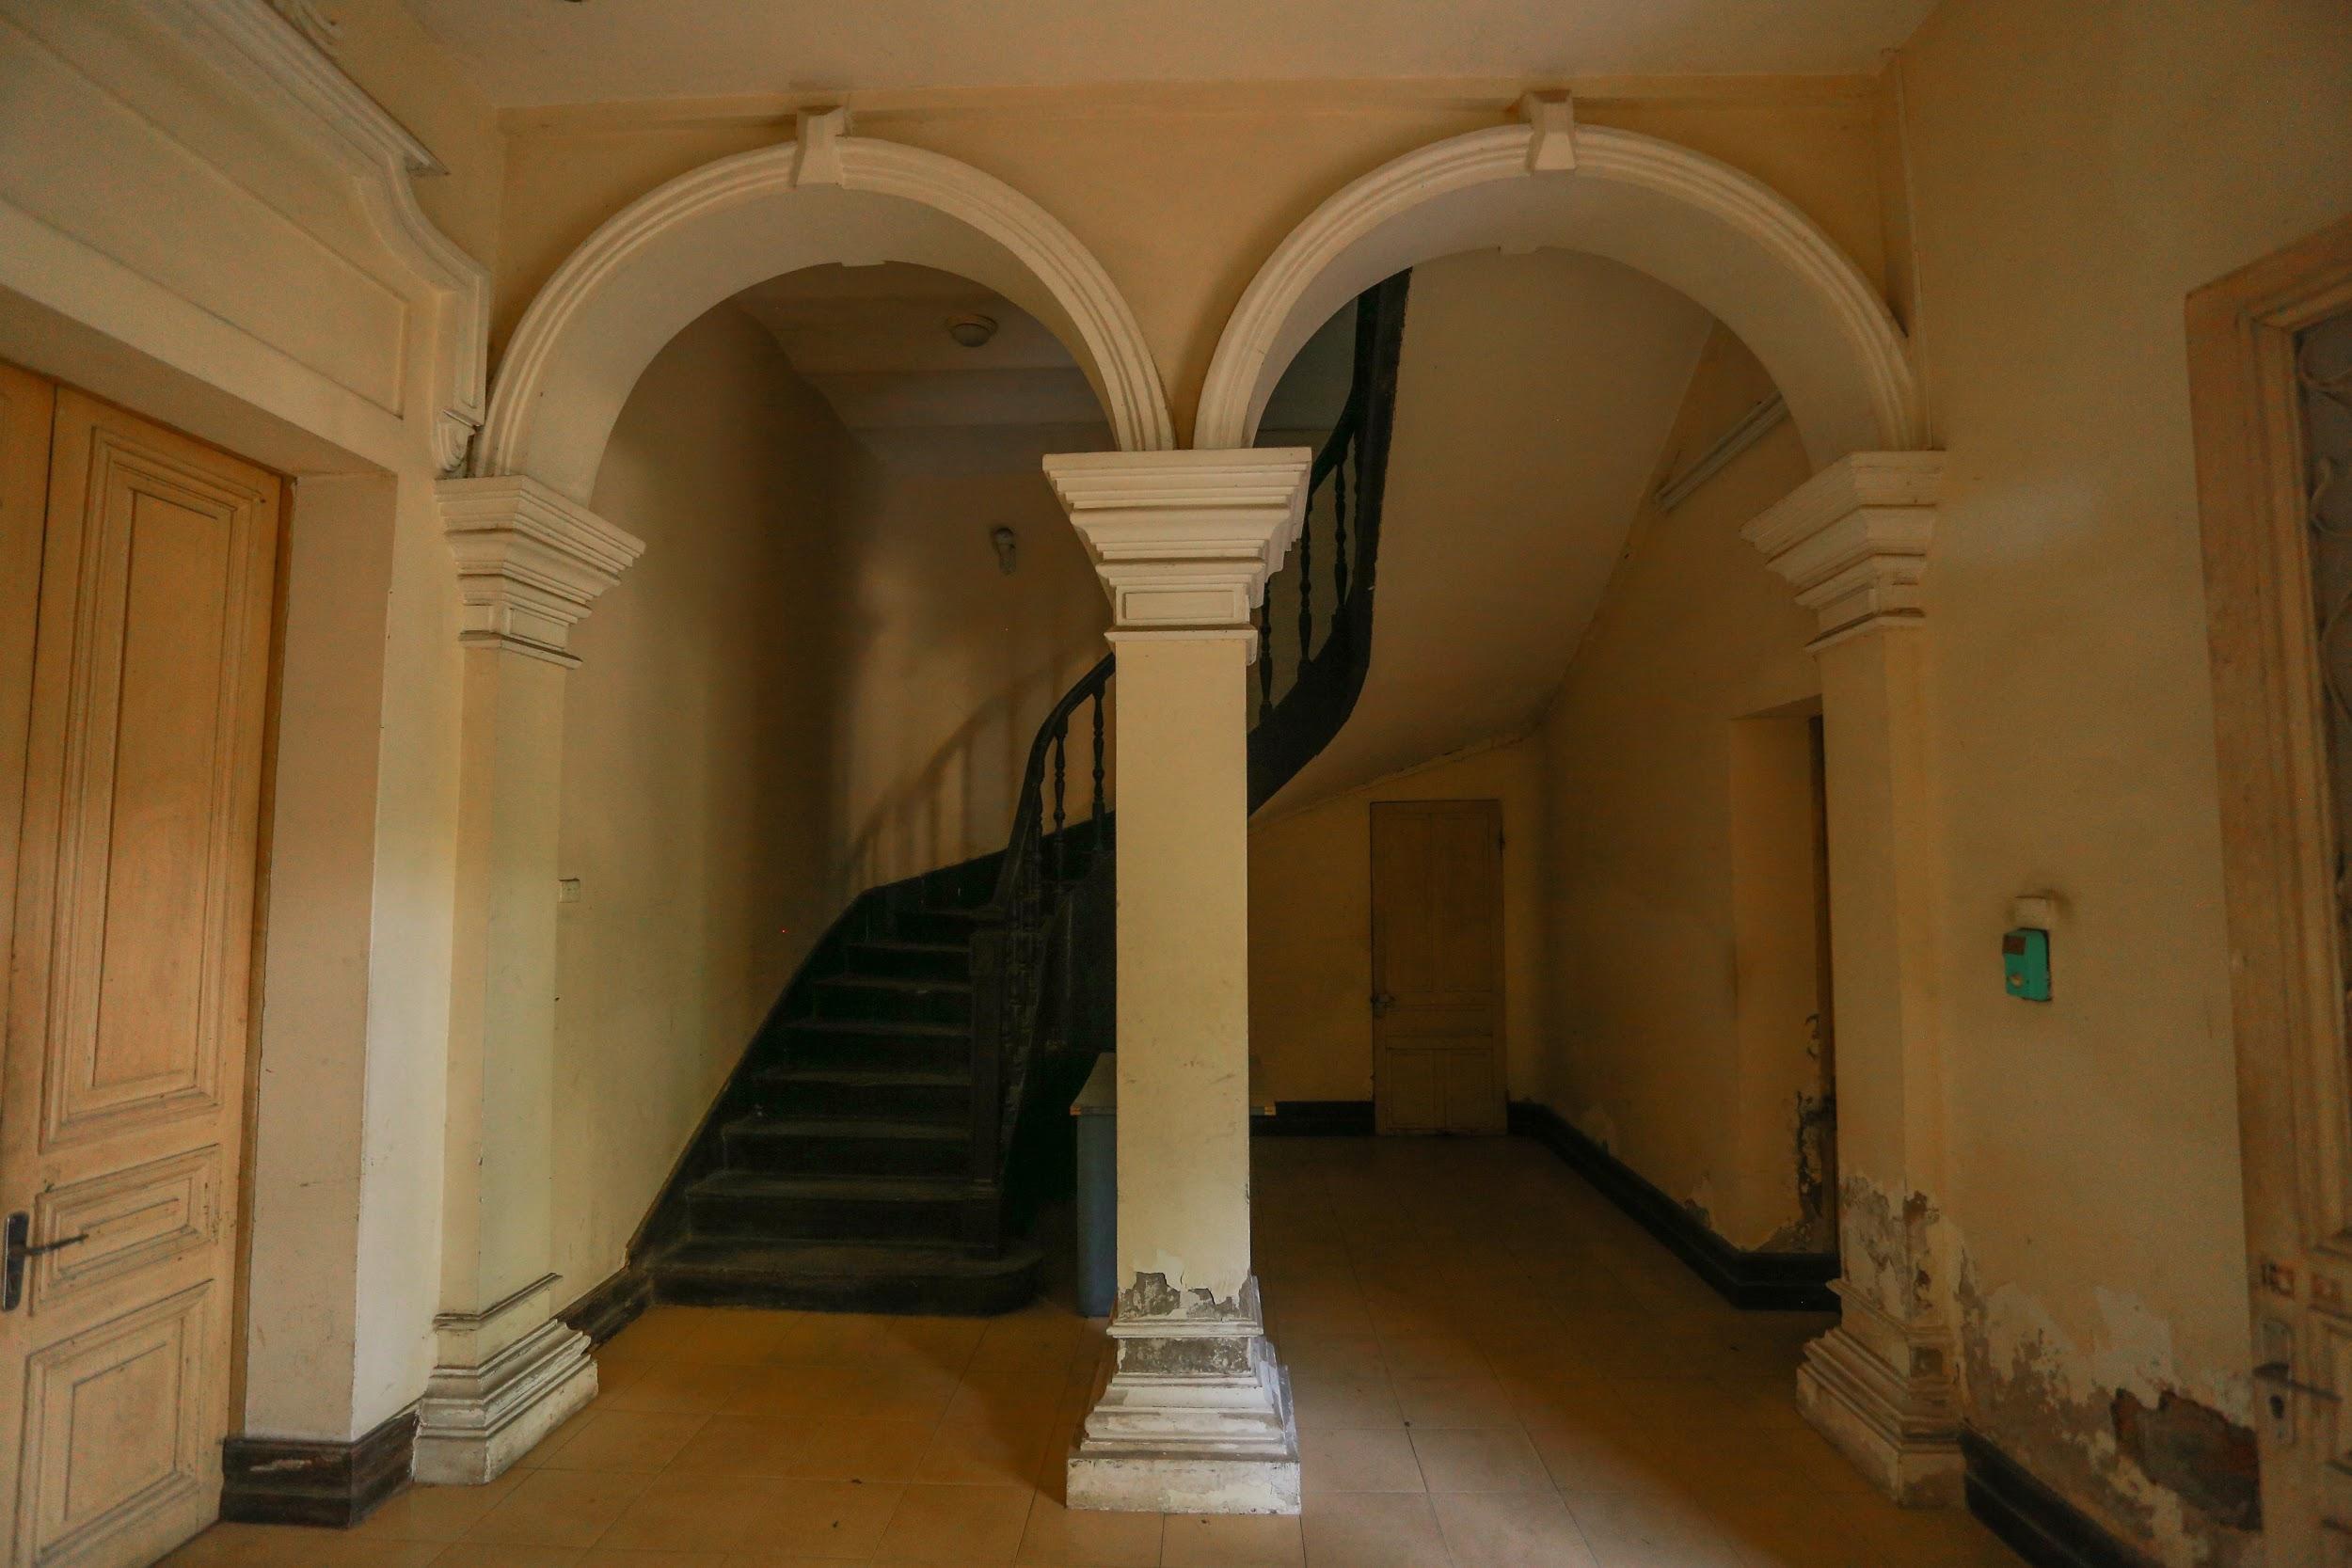 Chiêm ngưỡng dinh thự Pháp cổ từng là nơi ở của vua Bảo Đại tại Hà Nội - Ảnh 10.